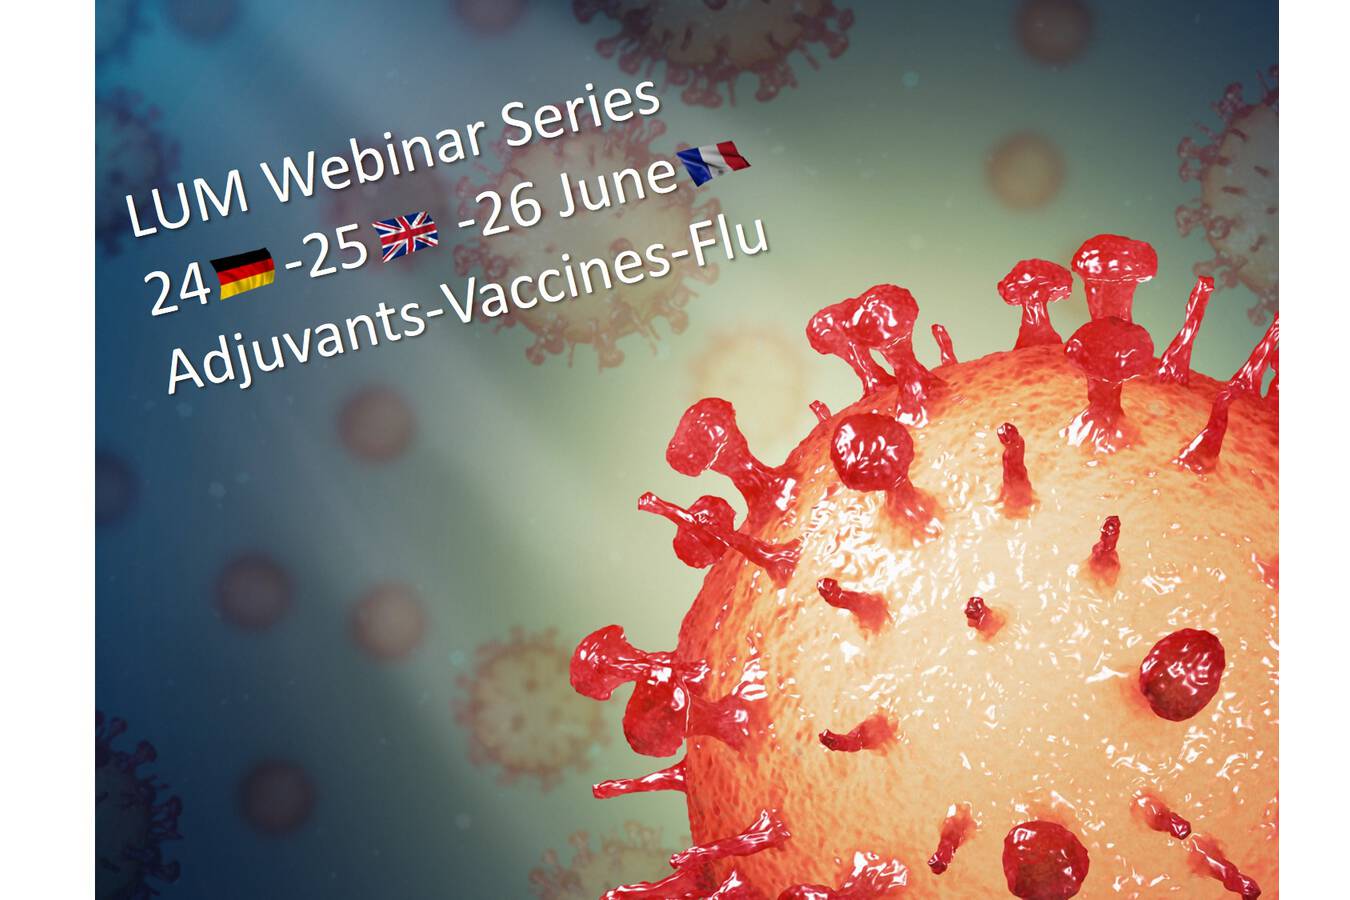 Adjuvants-Vaccines-Influenza-Webinar